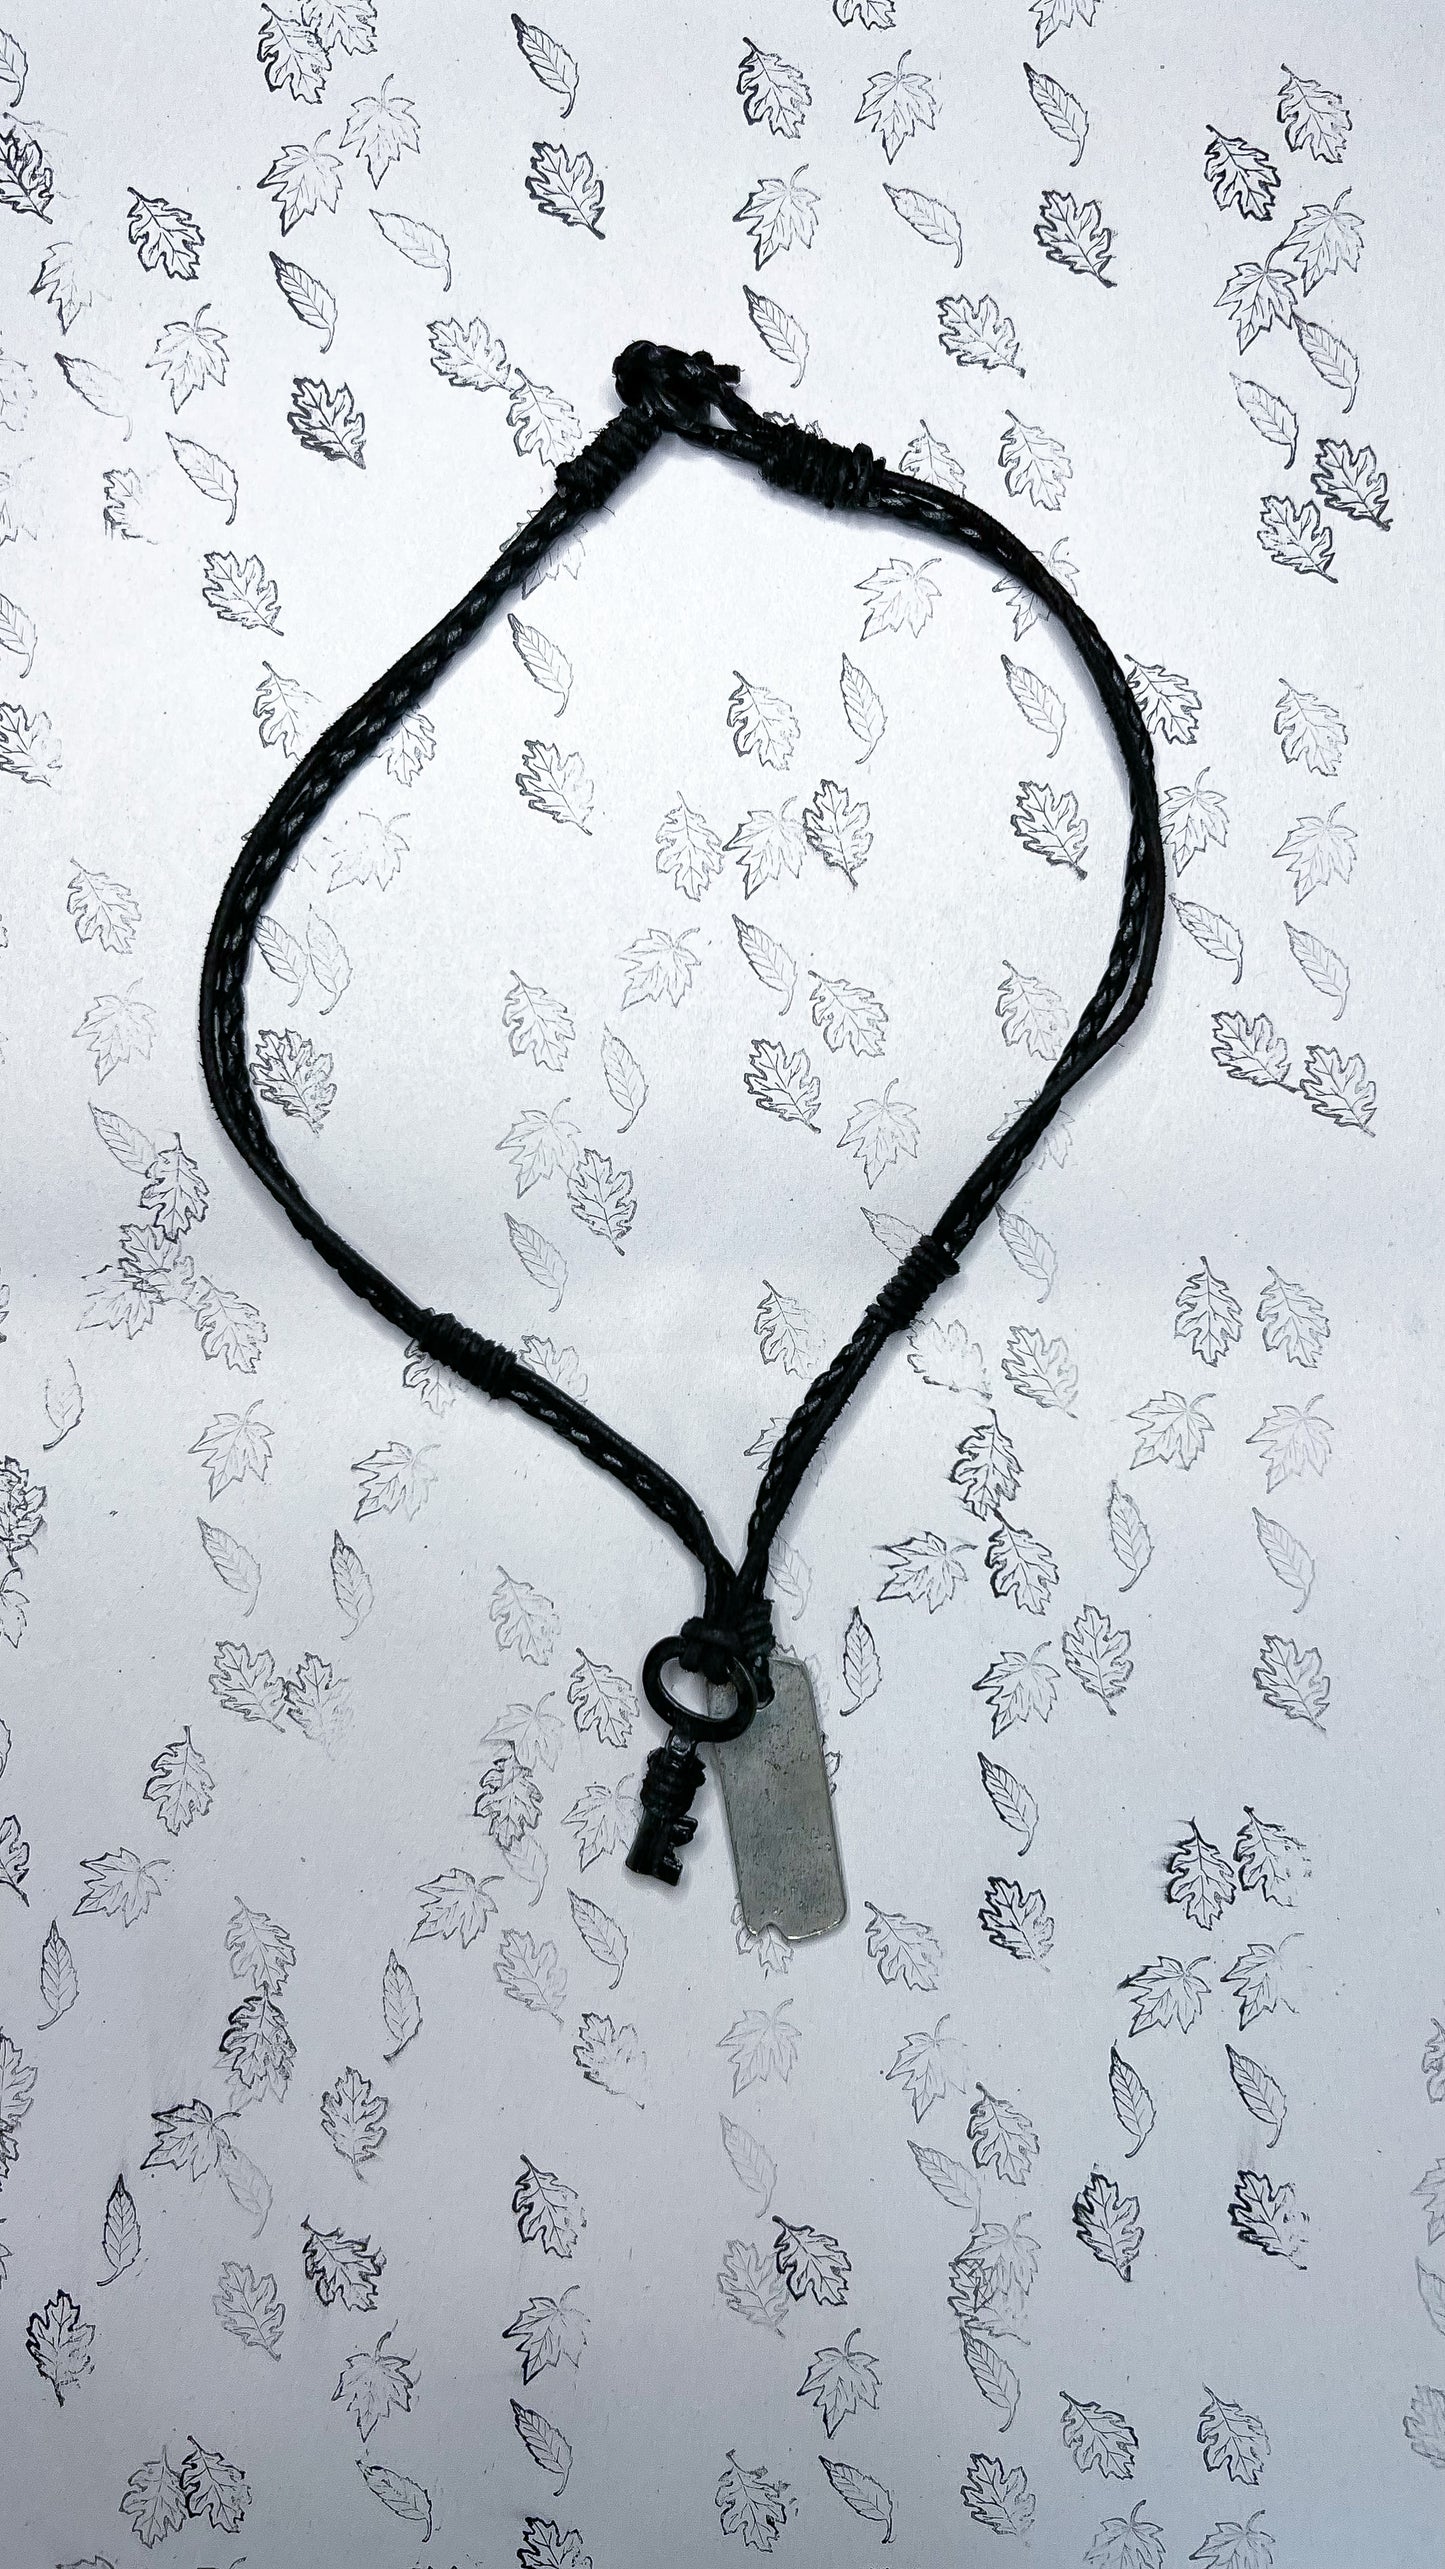 Klaus Antique Key Necklace - LAST ONES